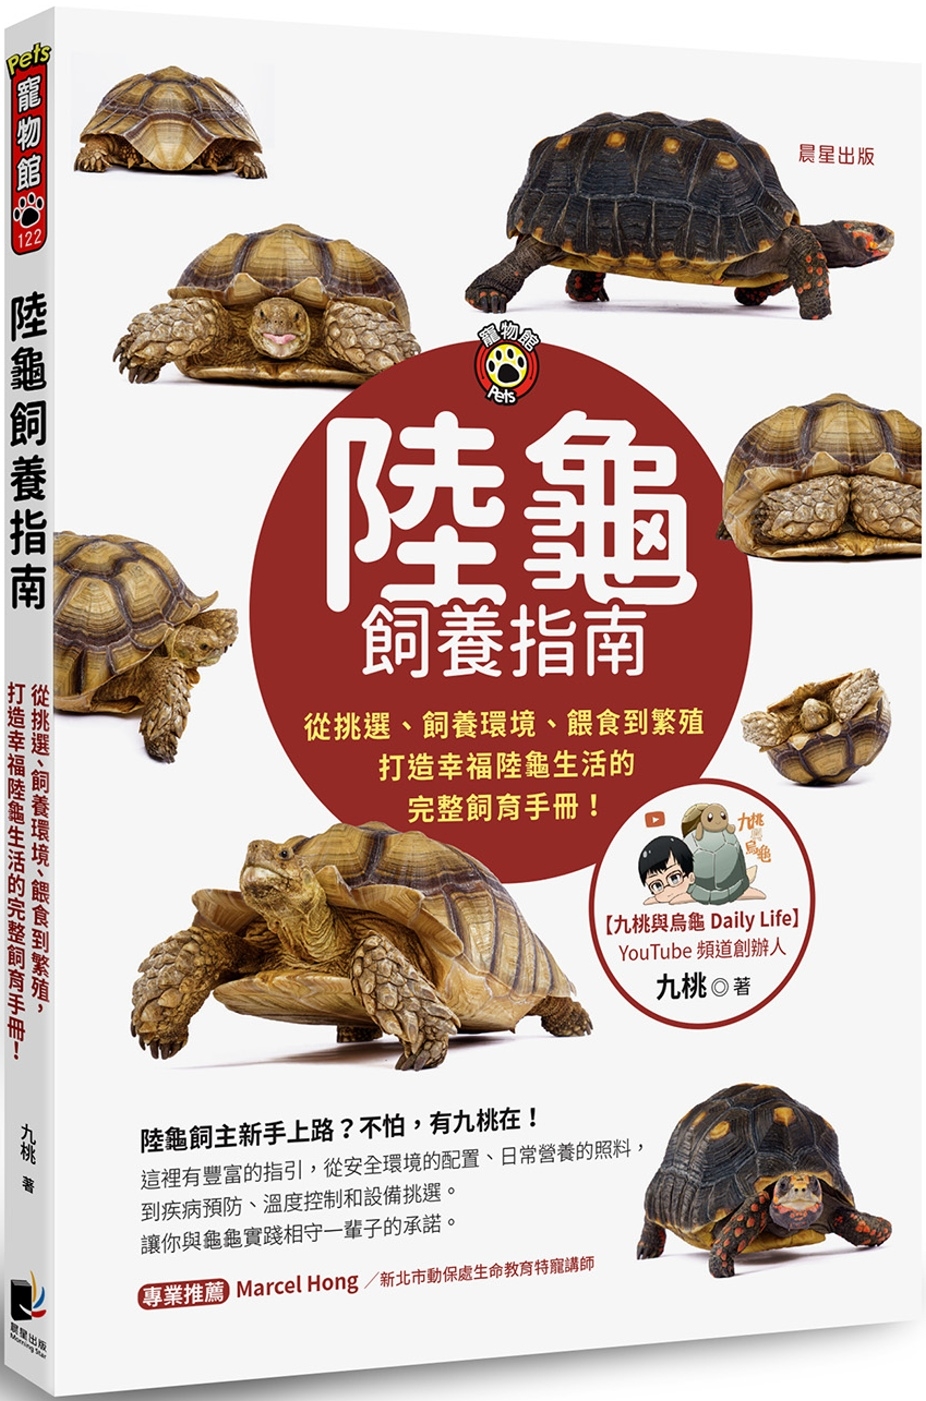 陸龜飼養指南：從挑選、飼養環境、餵食到繁殖，打造幸福陸龜生活的完整飼育手冊！